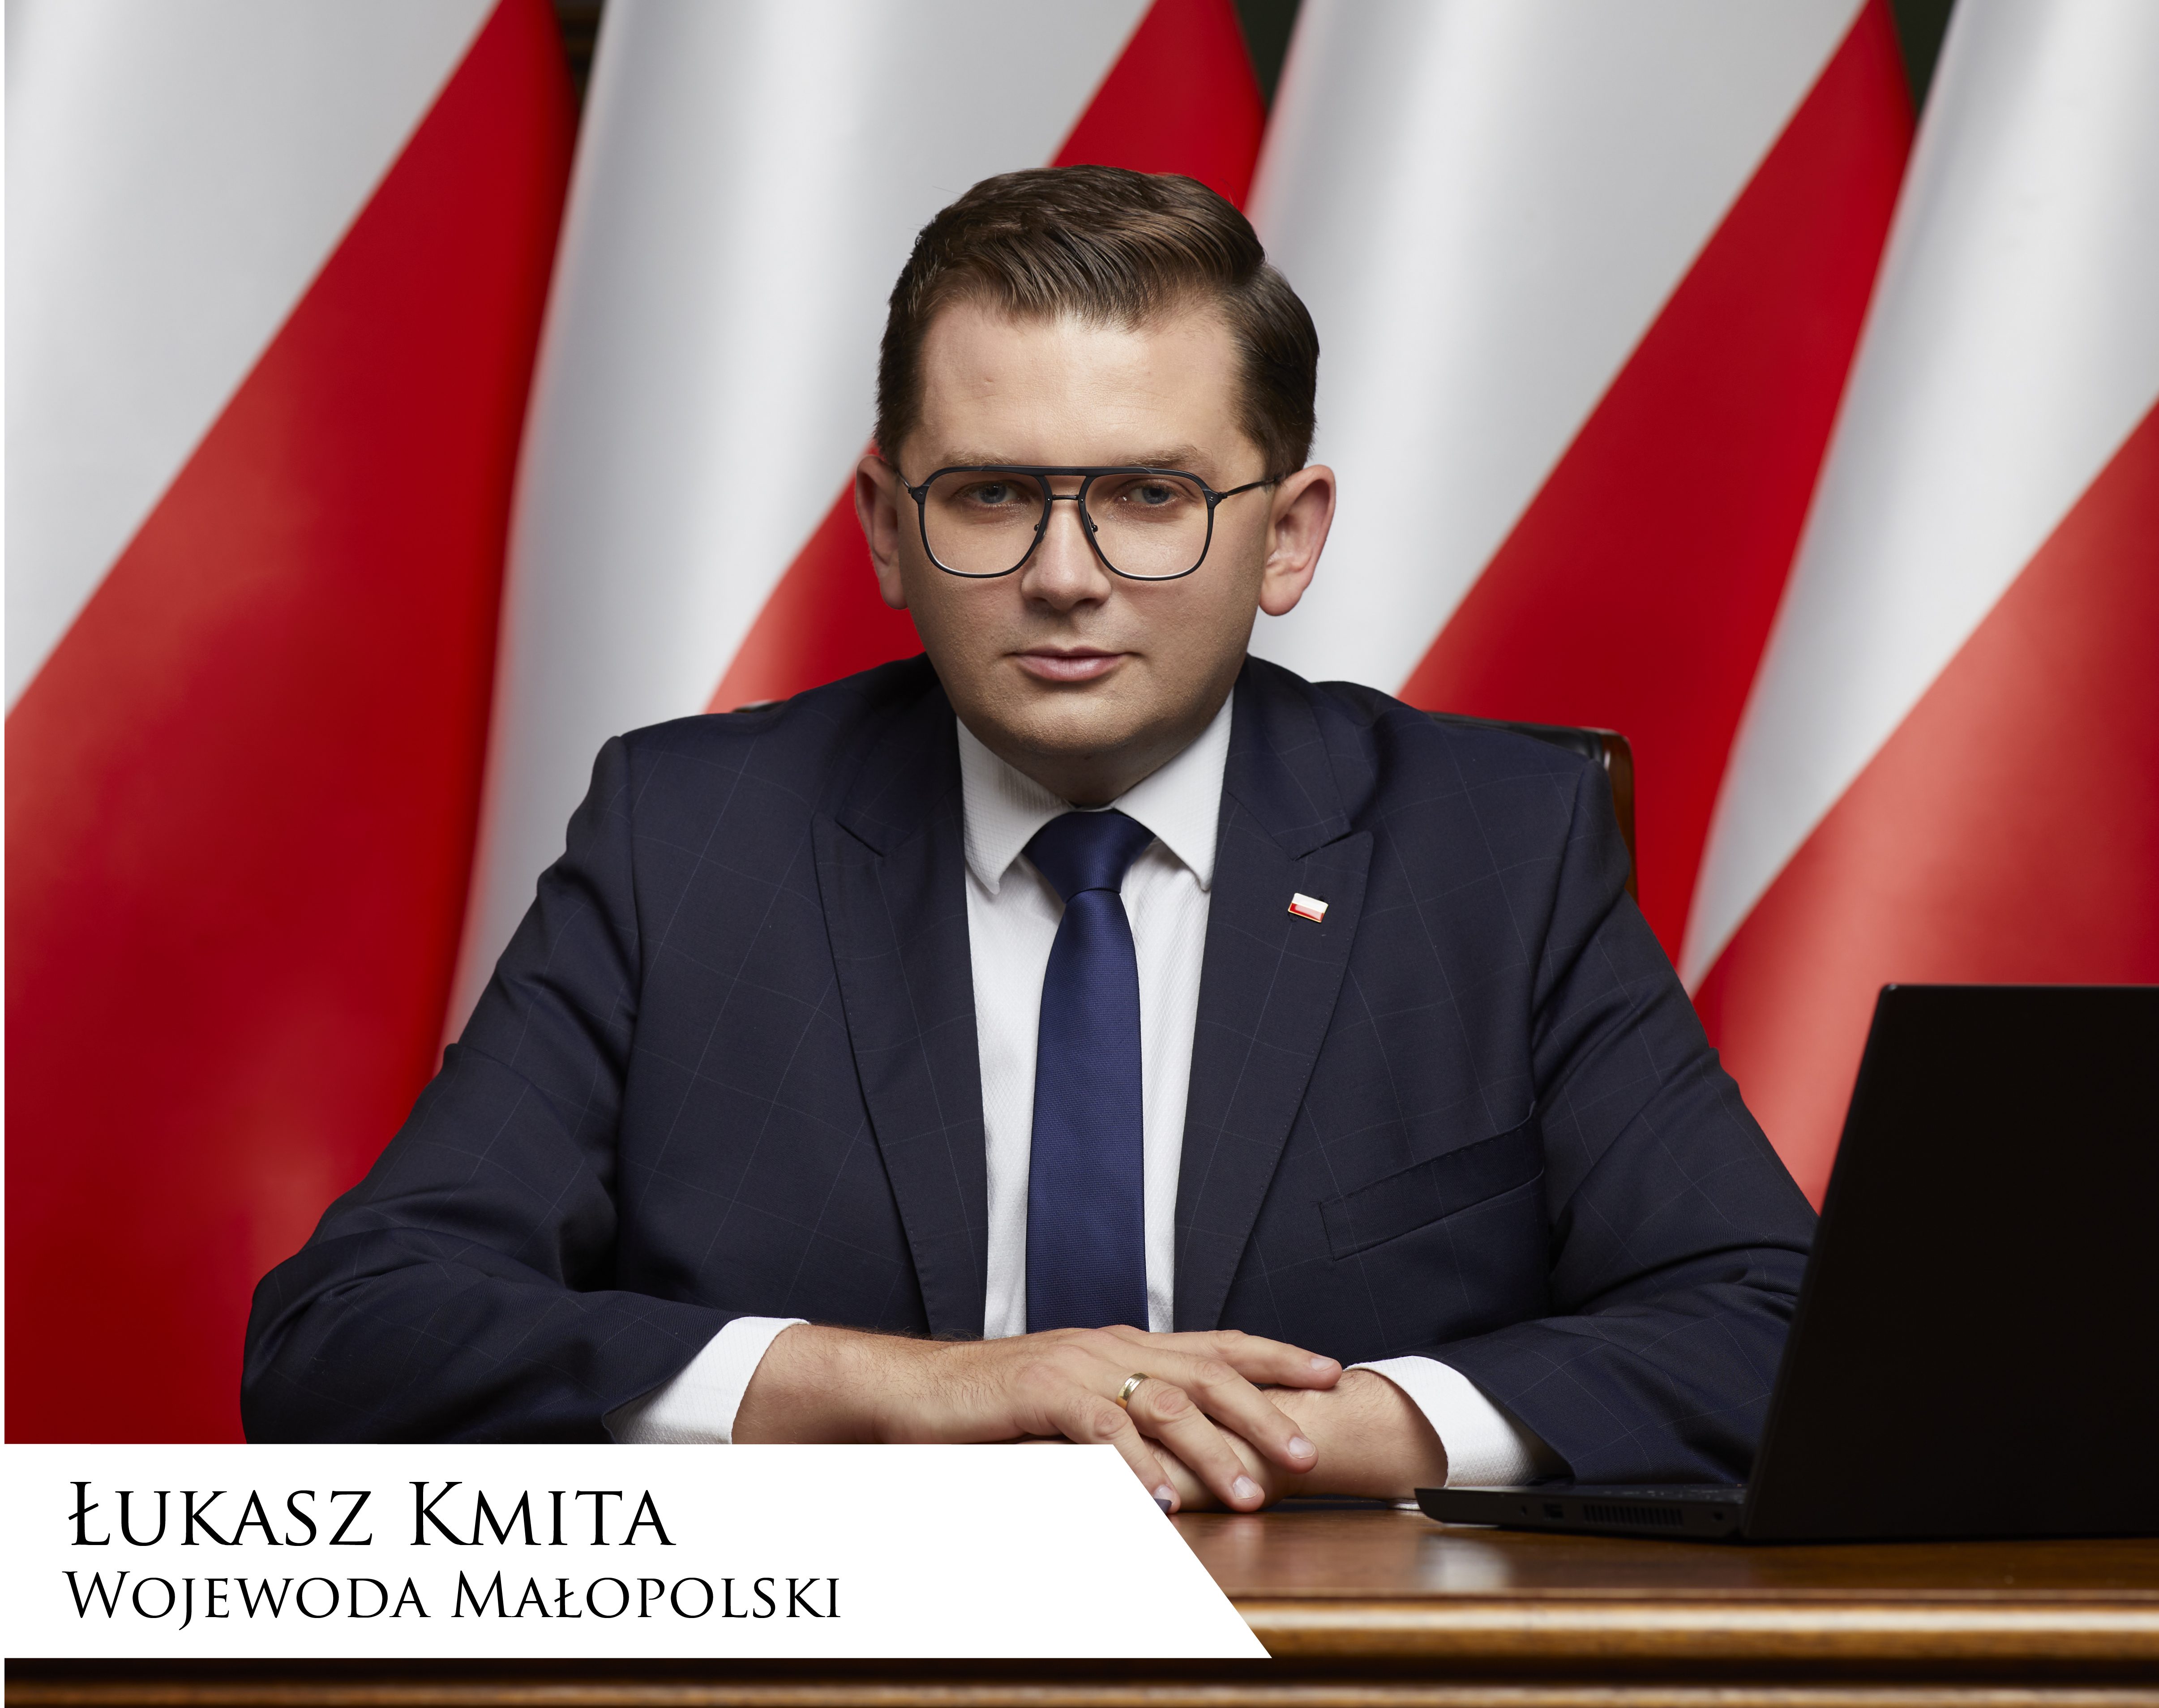 Łukasz Kmita, Wojewoda Małopolski siedzący przy biurku na tle flag Polski